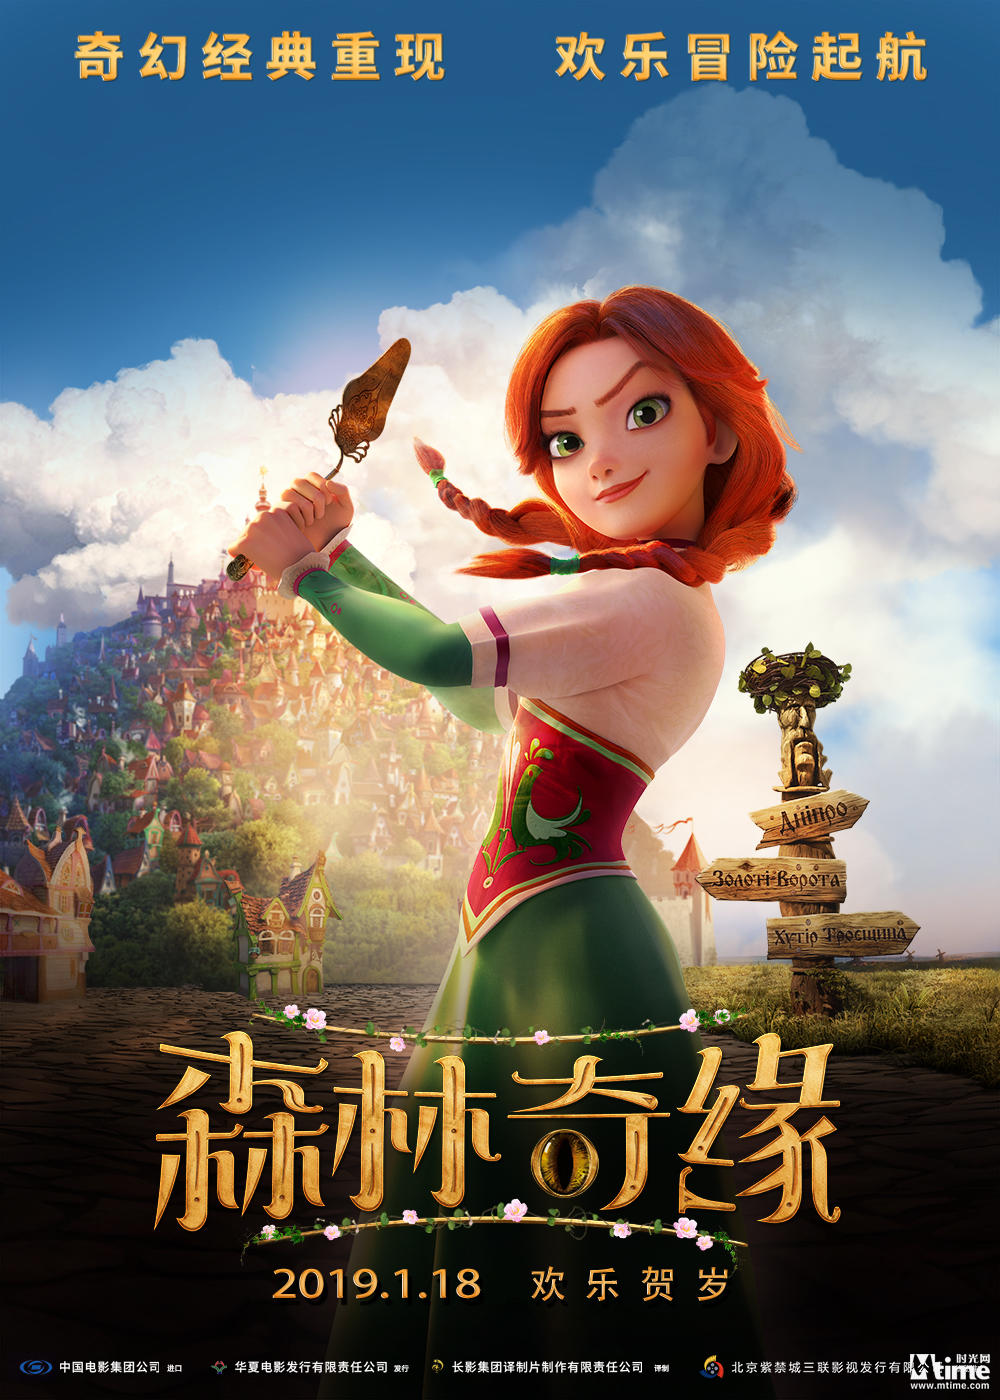 合家欢动画《森林奇缘》曝角色海报 公主骑士悉数登场